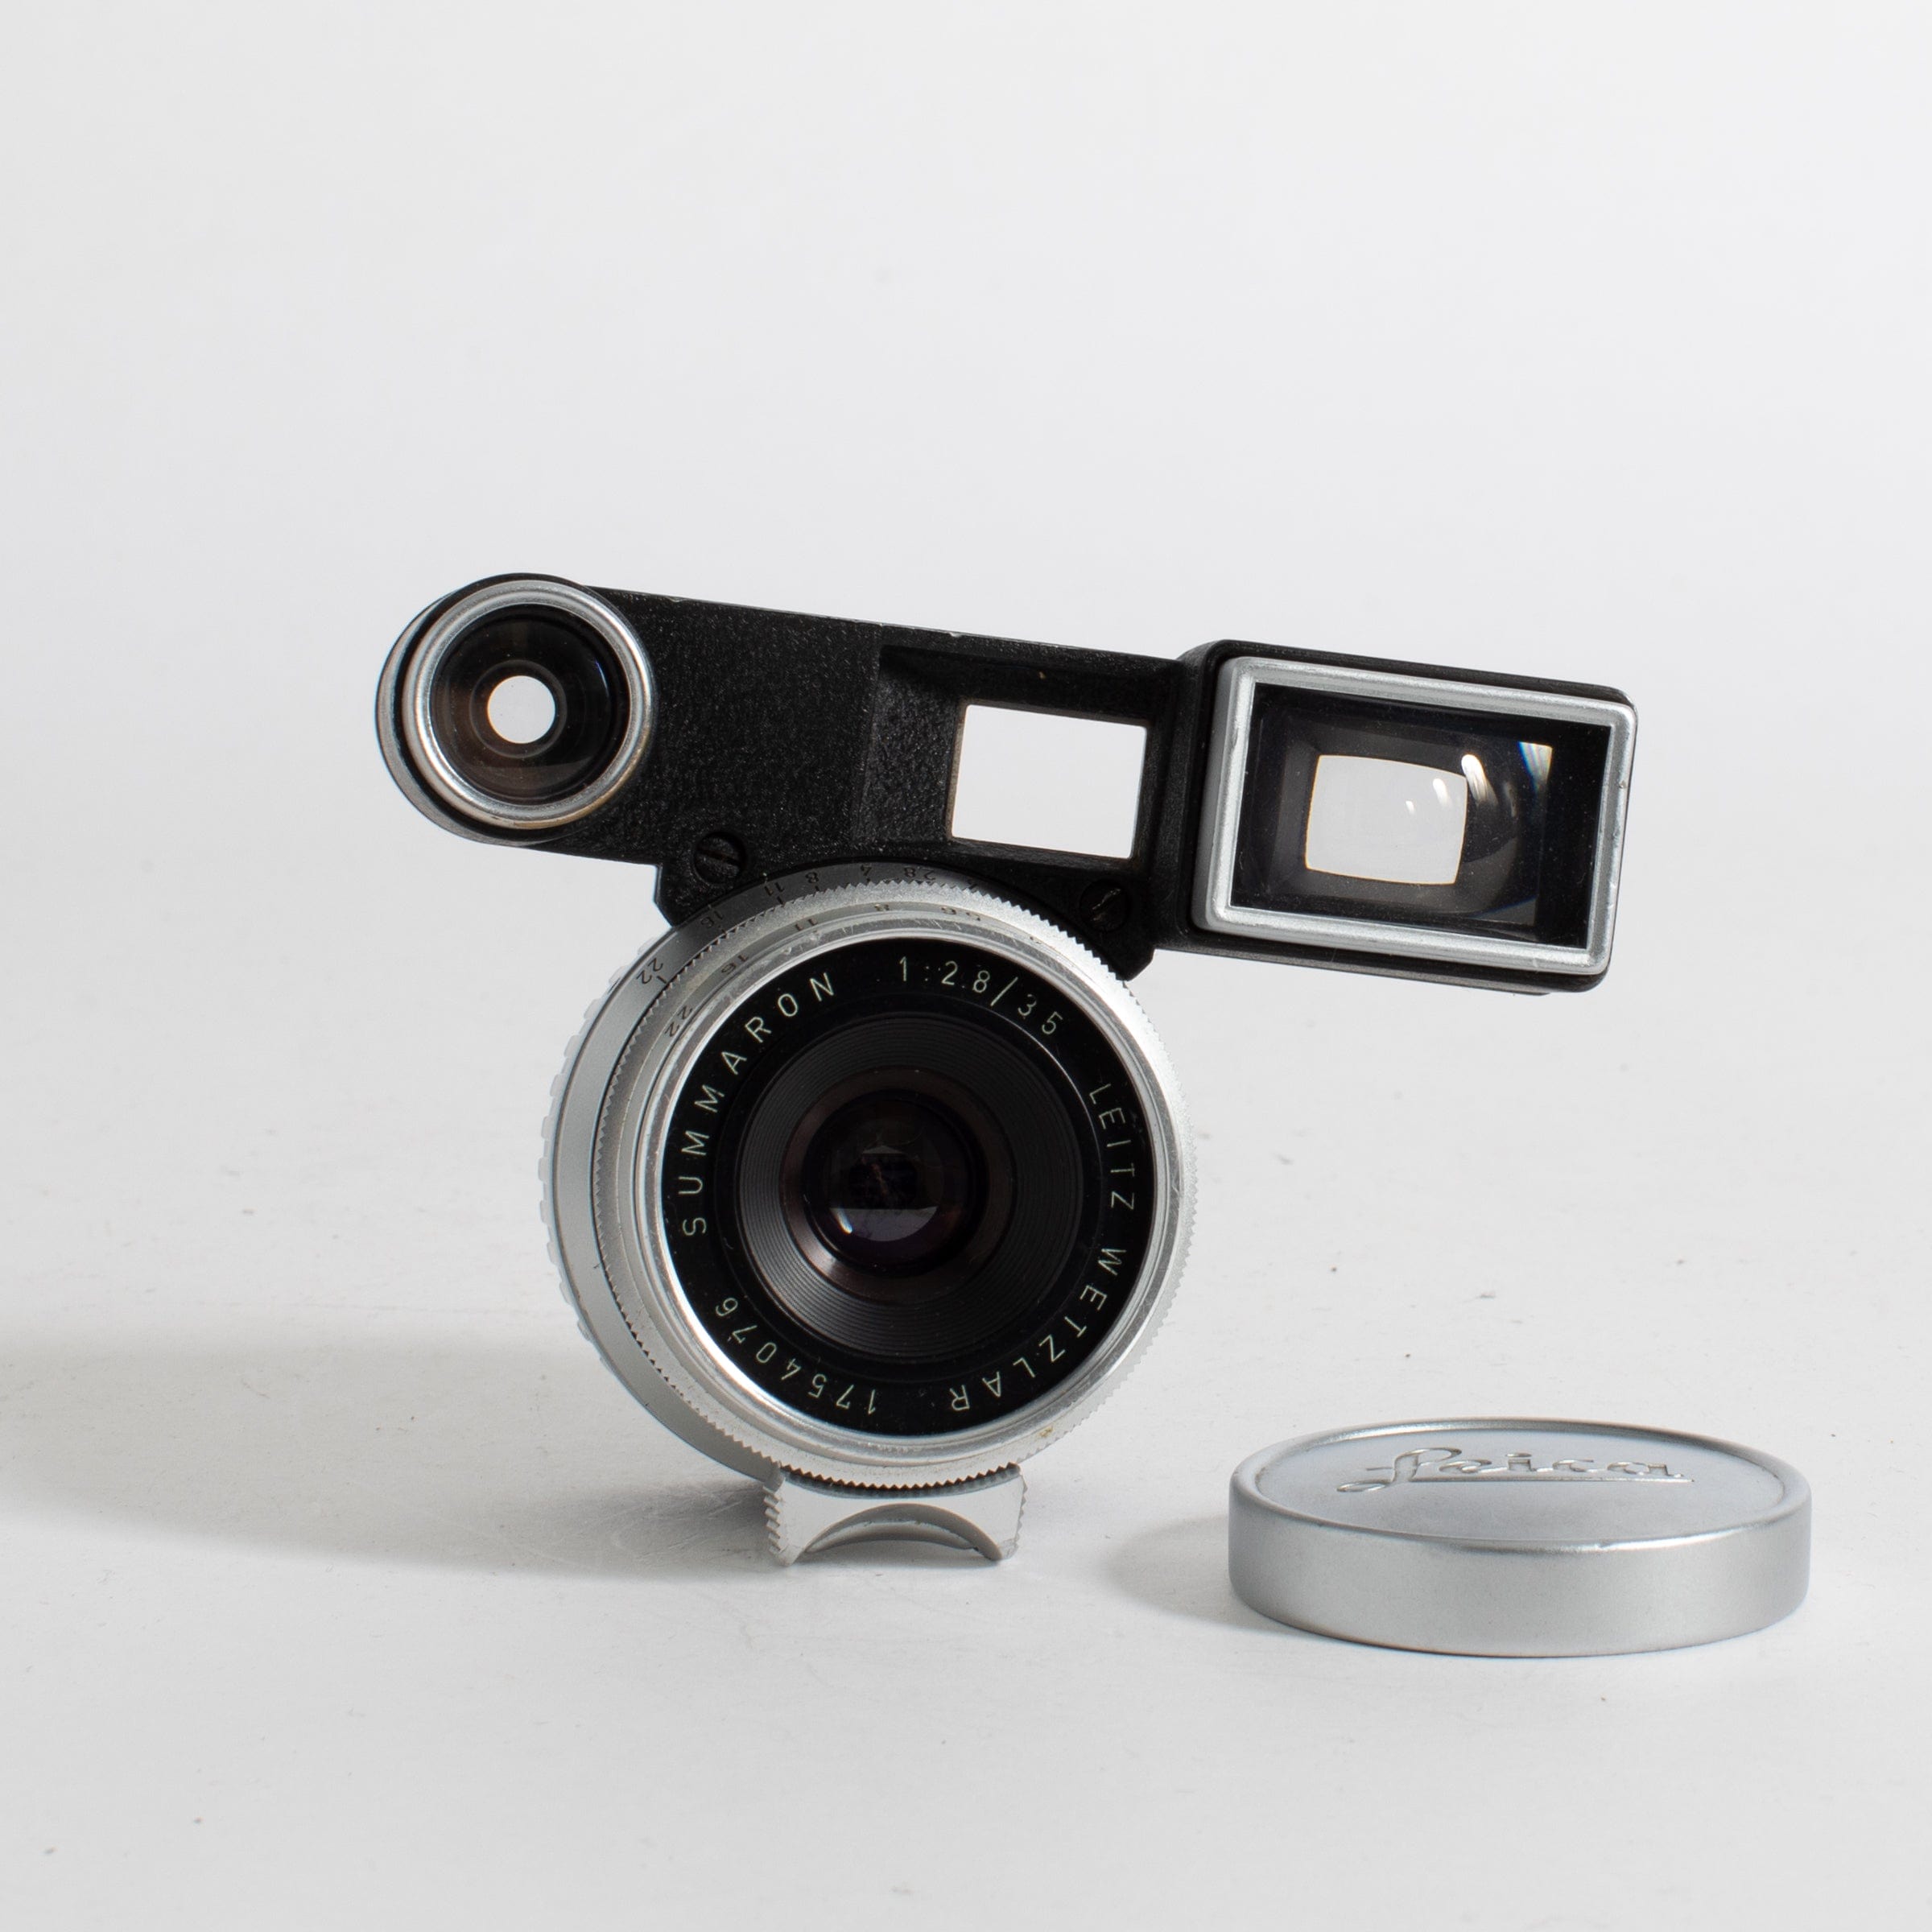 Leitz Wetzlar 35mm Summaron f/2.8 with Goggles – Film Supply Club